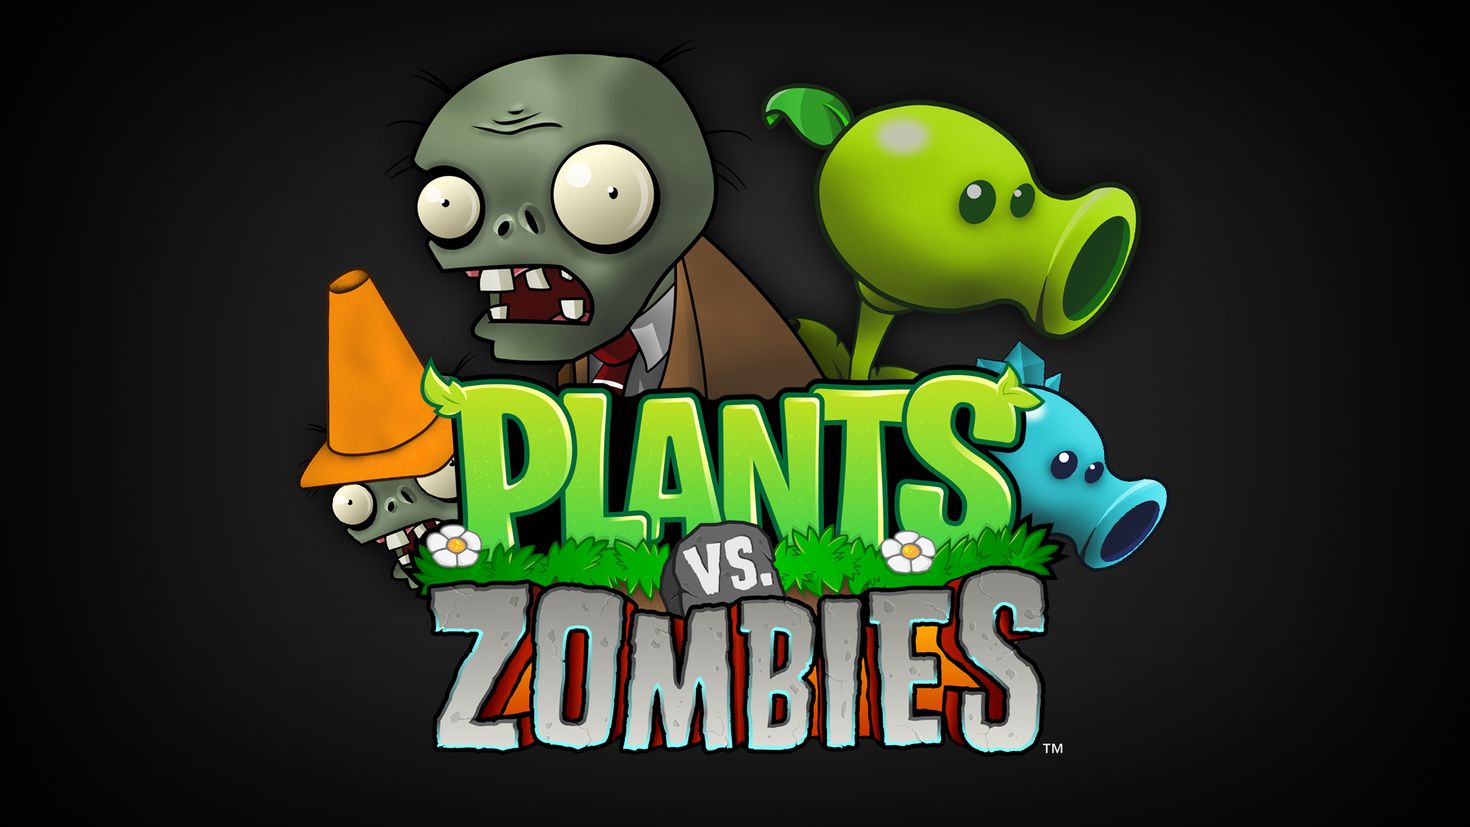 Игра битве зомби против растений. Растения против зомби 2 Постер. Plants vs. Zombies игры. Растения против зомби обложка. Растения против зомби 2 превью.